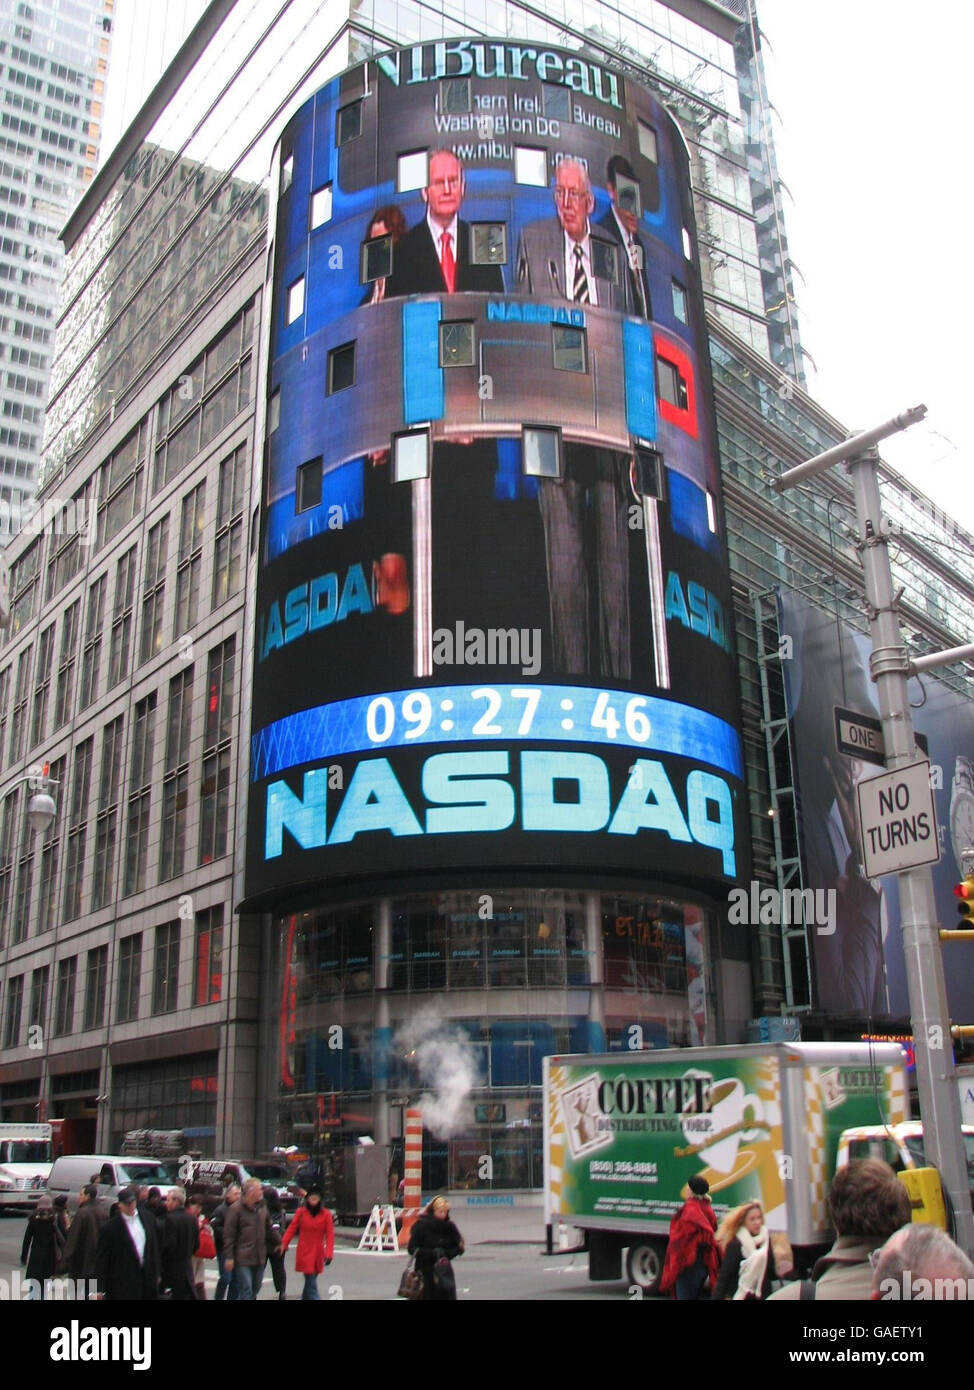 Während einer spektakulären Eröffnung der Nasdaq-Börse am New Yorker Times Square, die auf eine siebenstöckige Leinwand projiziert und live in den Vereinigten Staaten übertragen wurde, Nordirlands erster Minister Ian Paisley und der stellvertretende erste Minister Martin McGuinness wurden von führenden irischen Amerikanern begrüßt, nachdem sie sagten, dass Nordirland bereit sei, Geschäfte mit den Vereinigten Staaten zu machen. Stockfoto